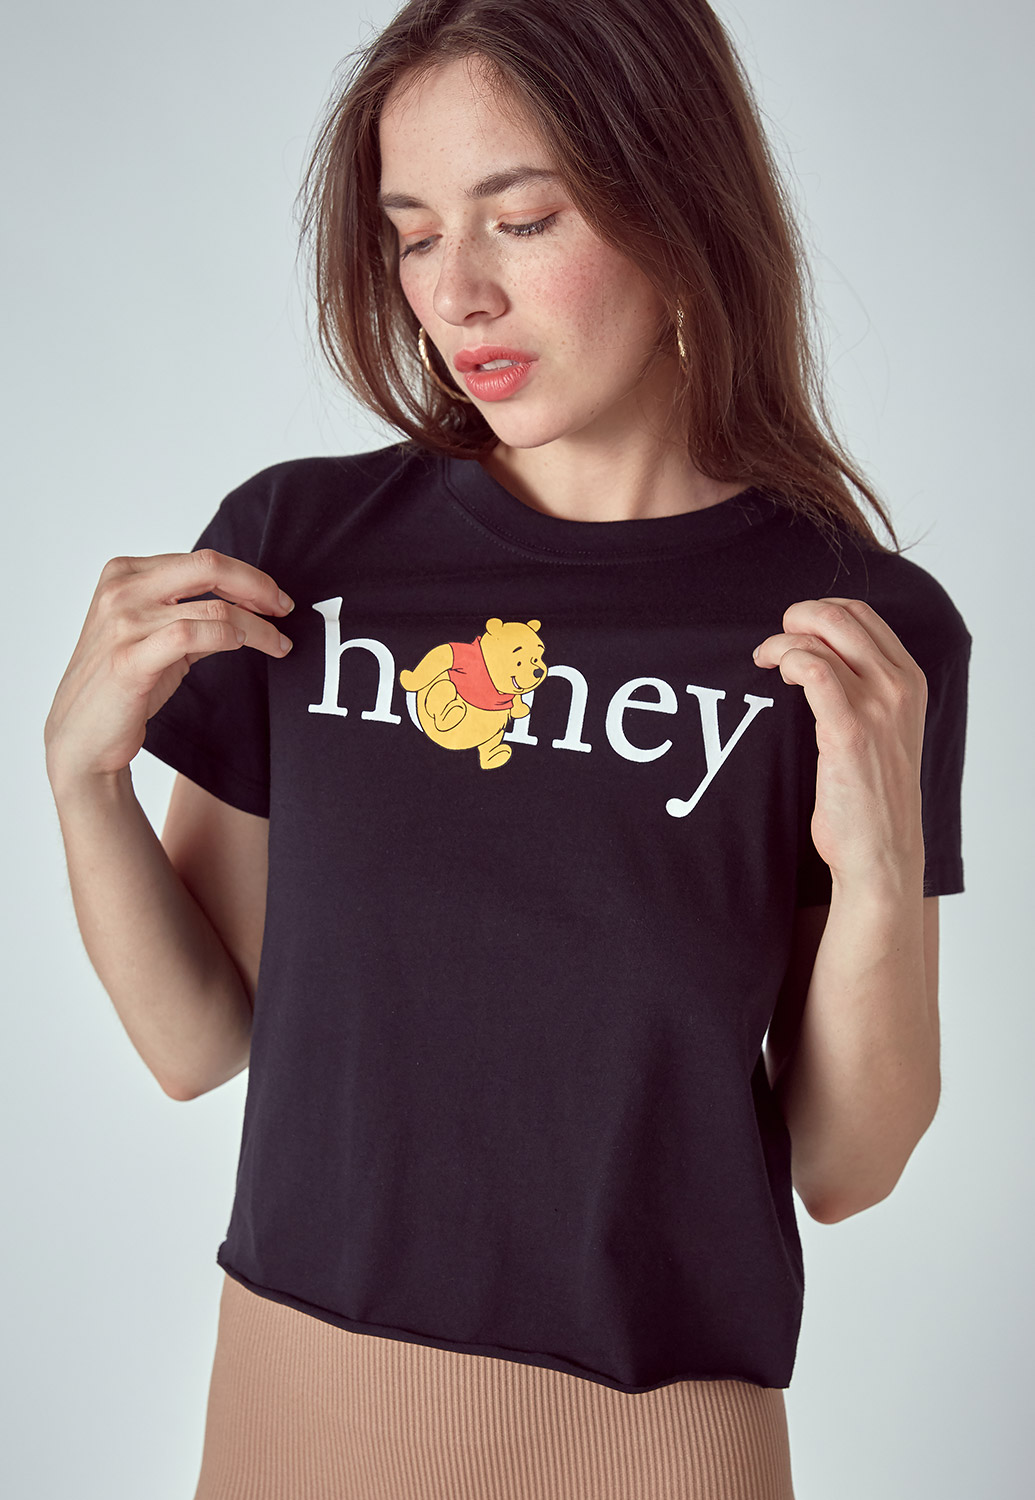 Honey Pooh Bear T Shirts